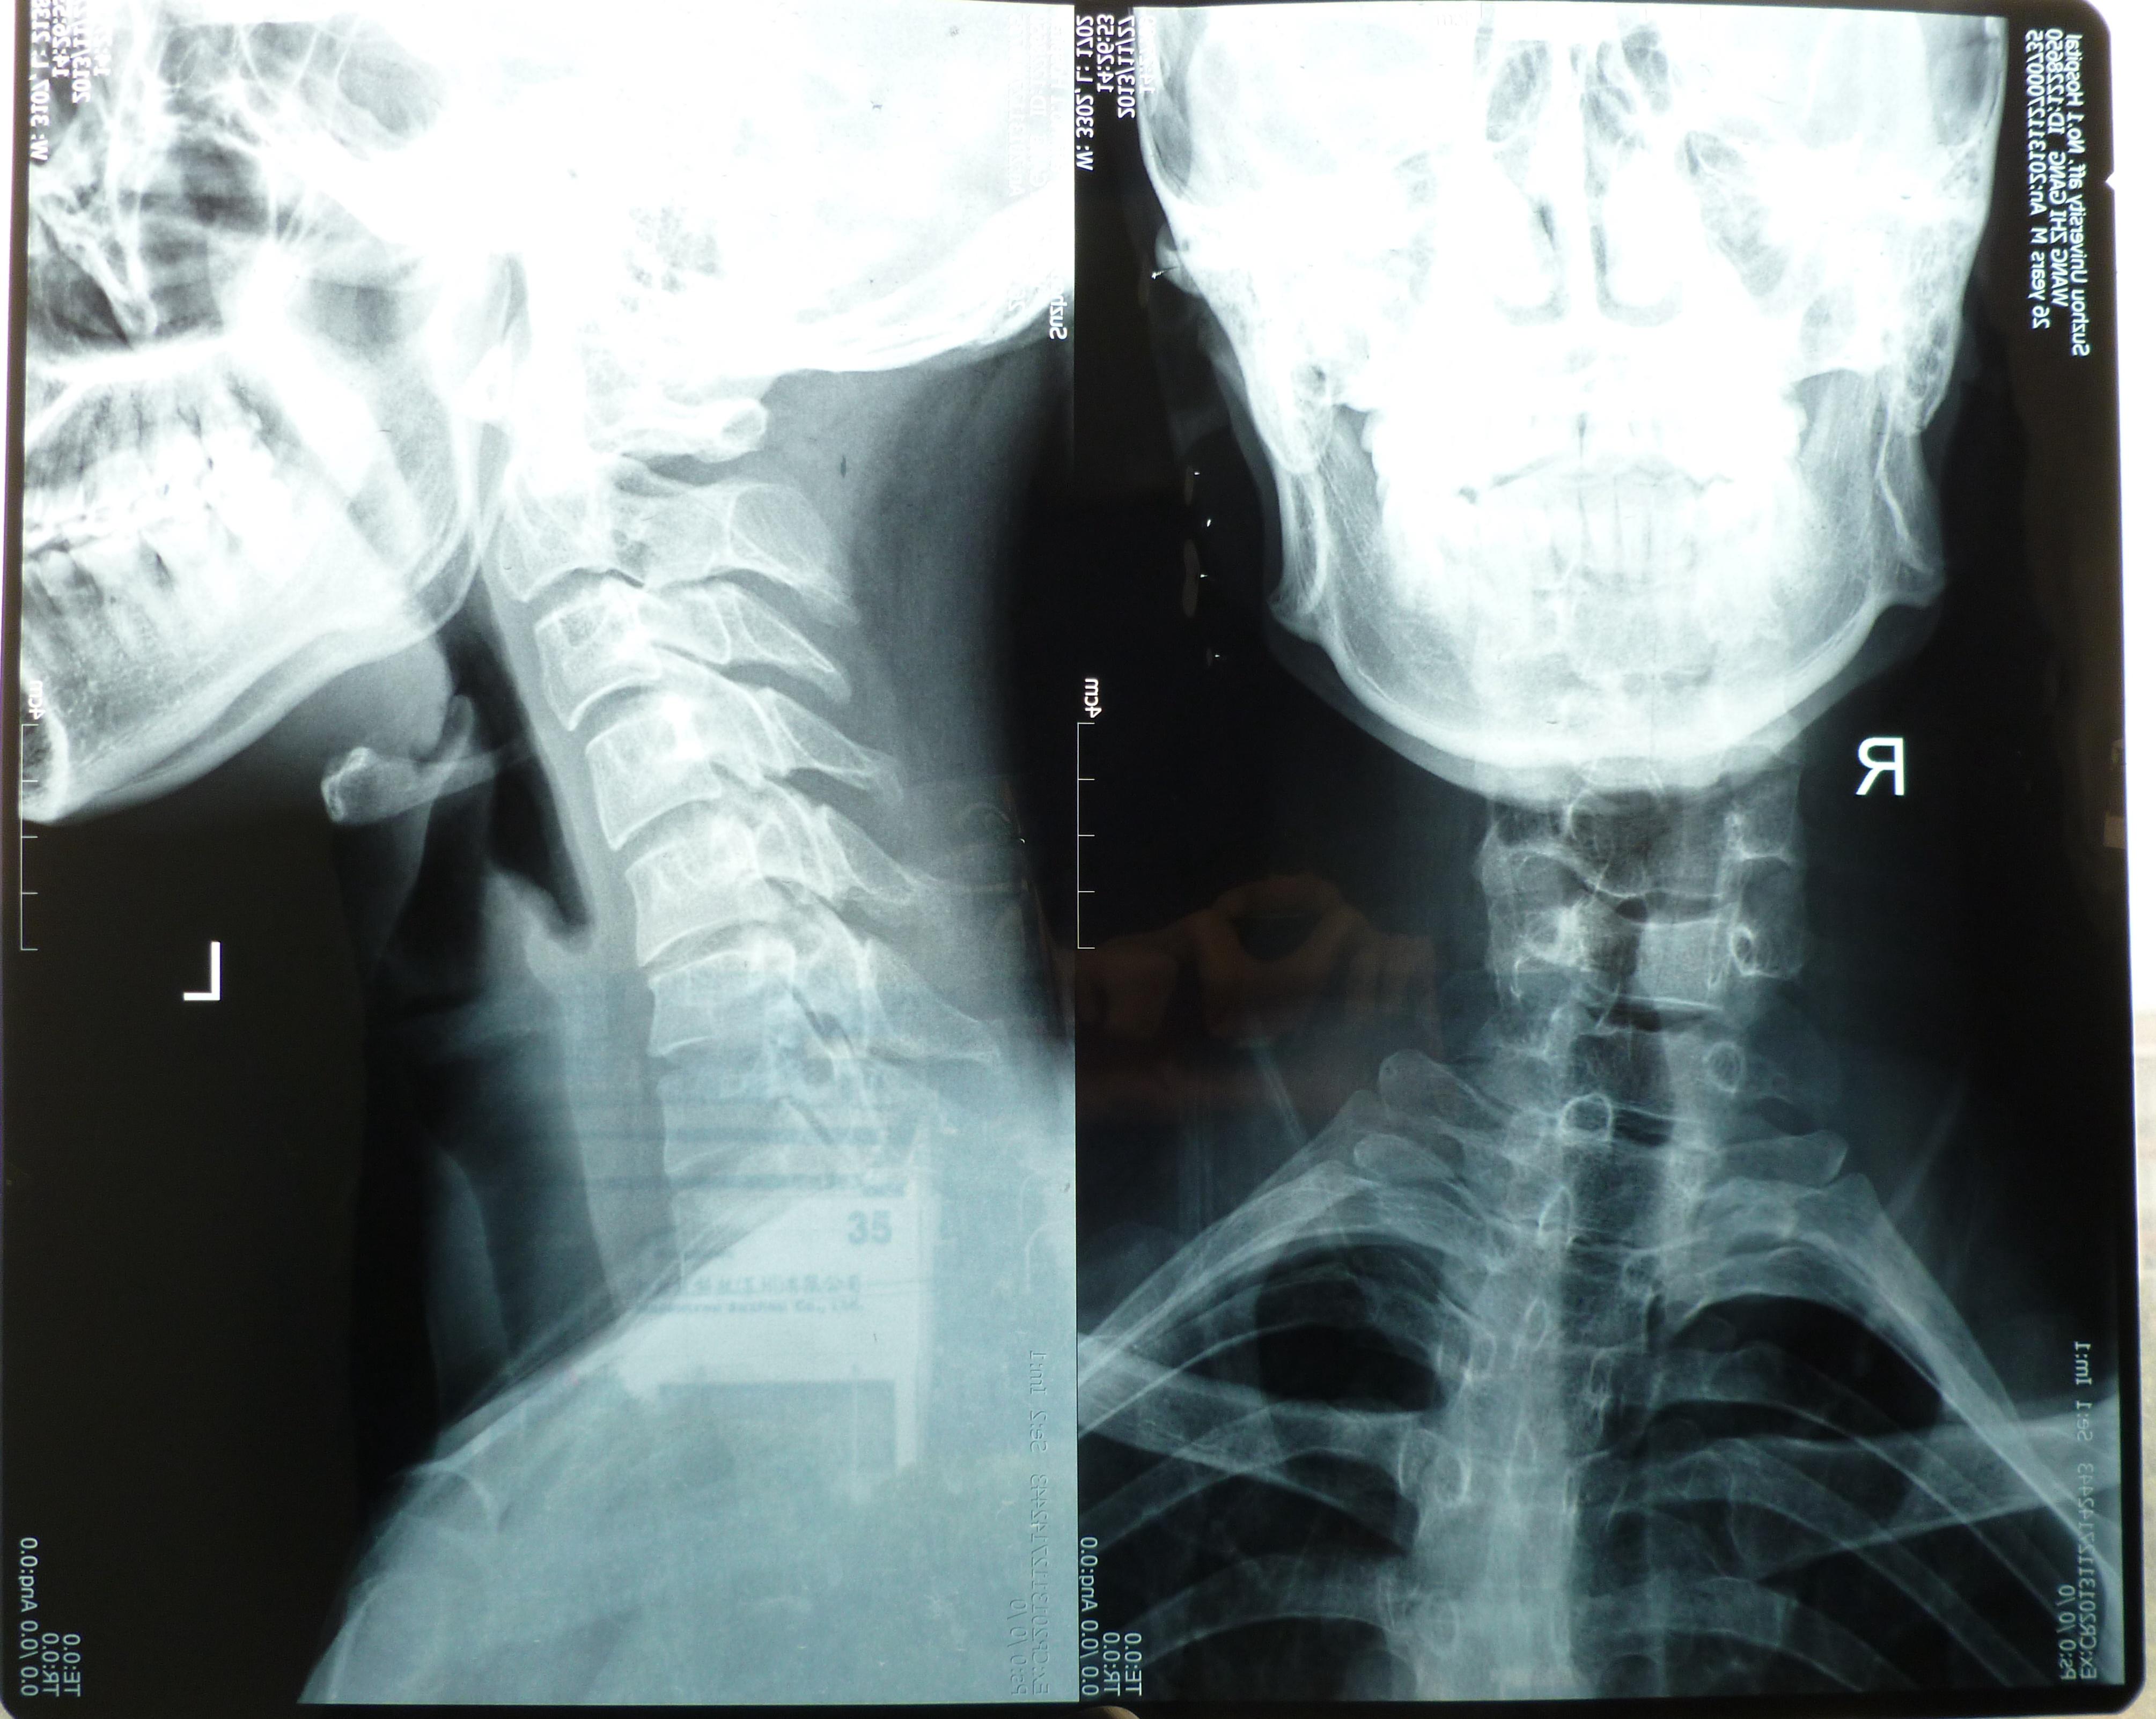 颈椎测弯 颈椎间盘突出 28岁(定期更新治疗进展,欢迎讨论)